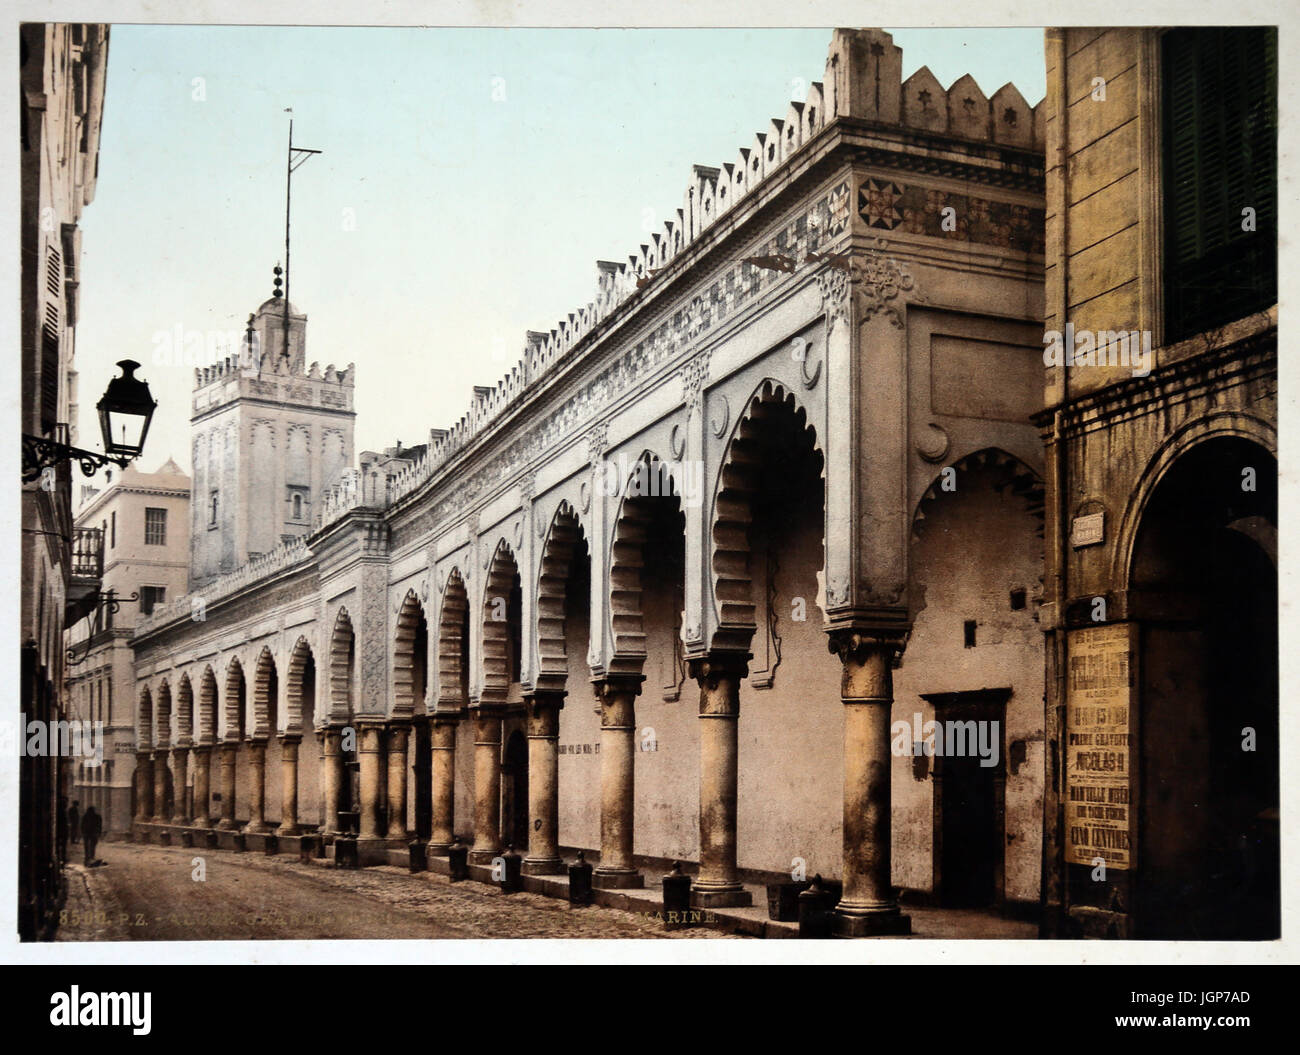 Grande mosquée dans la rue Marine à Alger. Algérie (ca.1899). Impression Photochrome. Partie d'un album photo. Banque D'Images